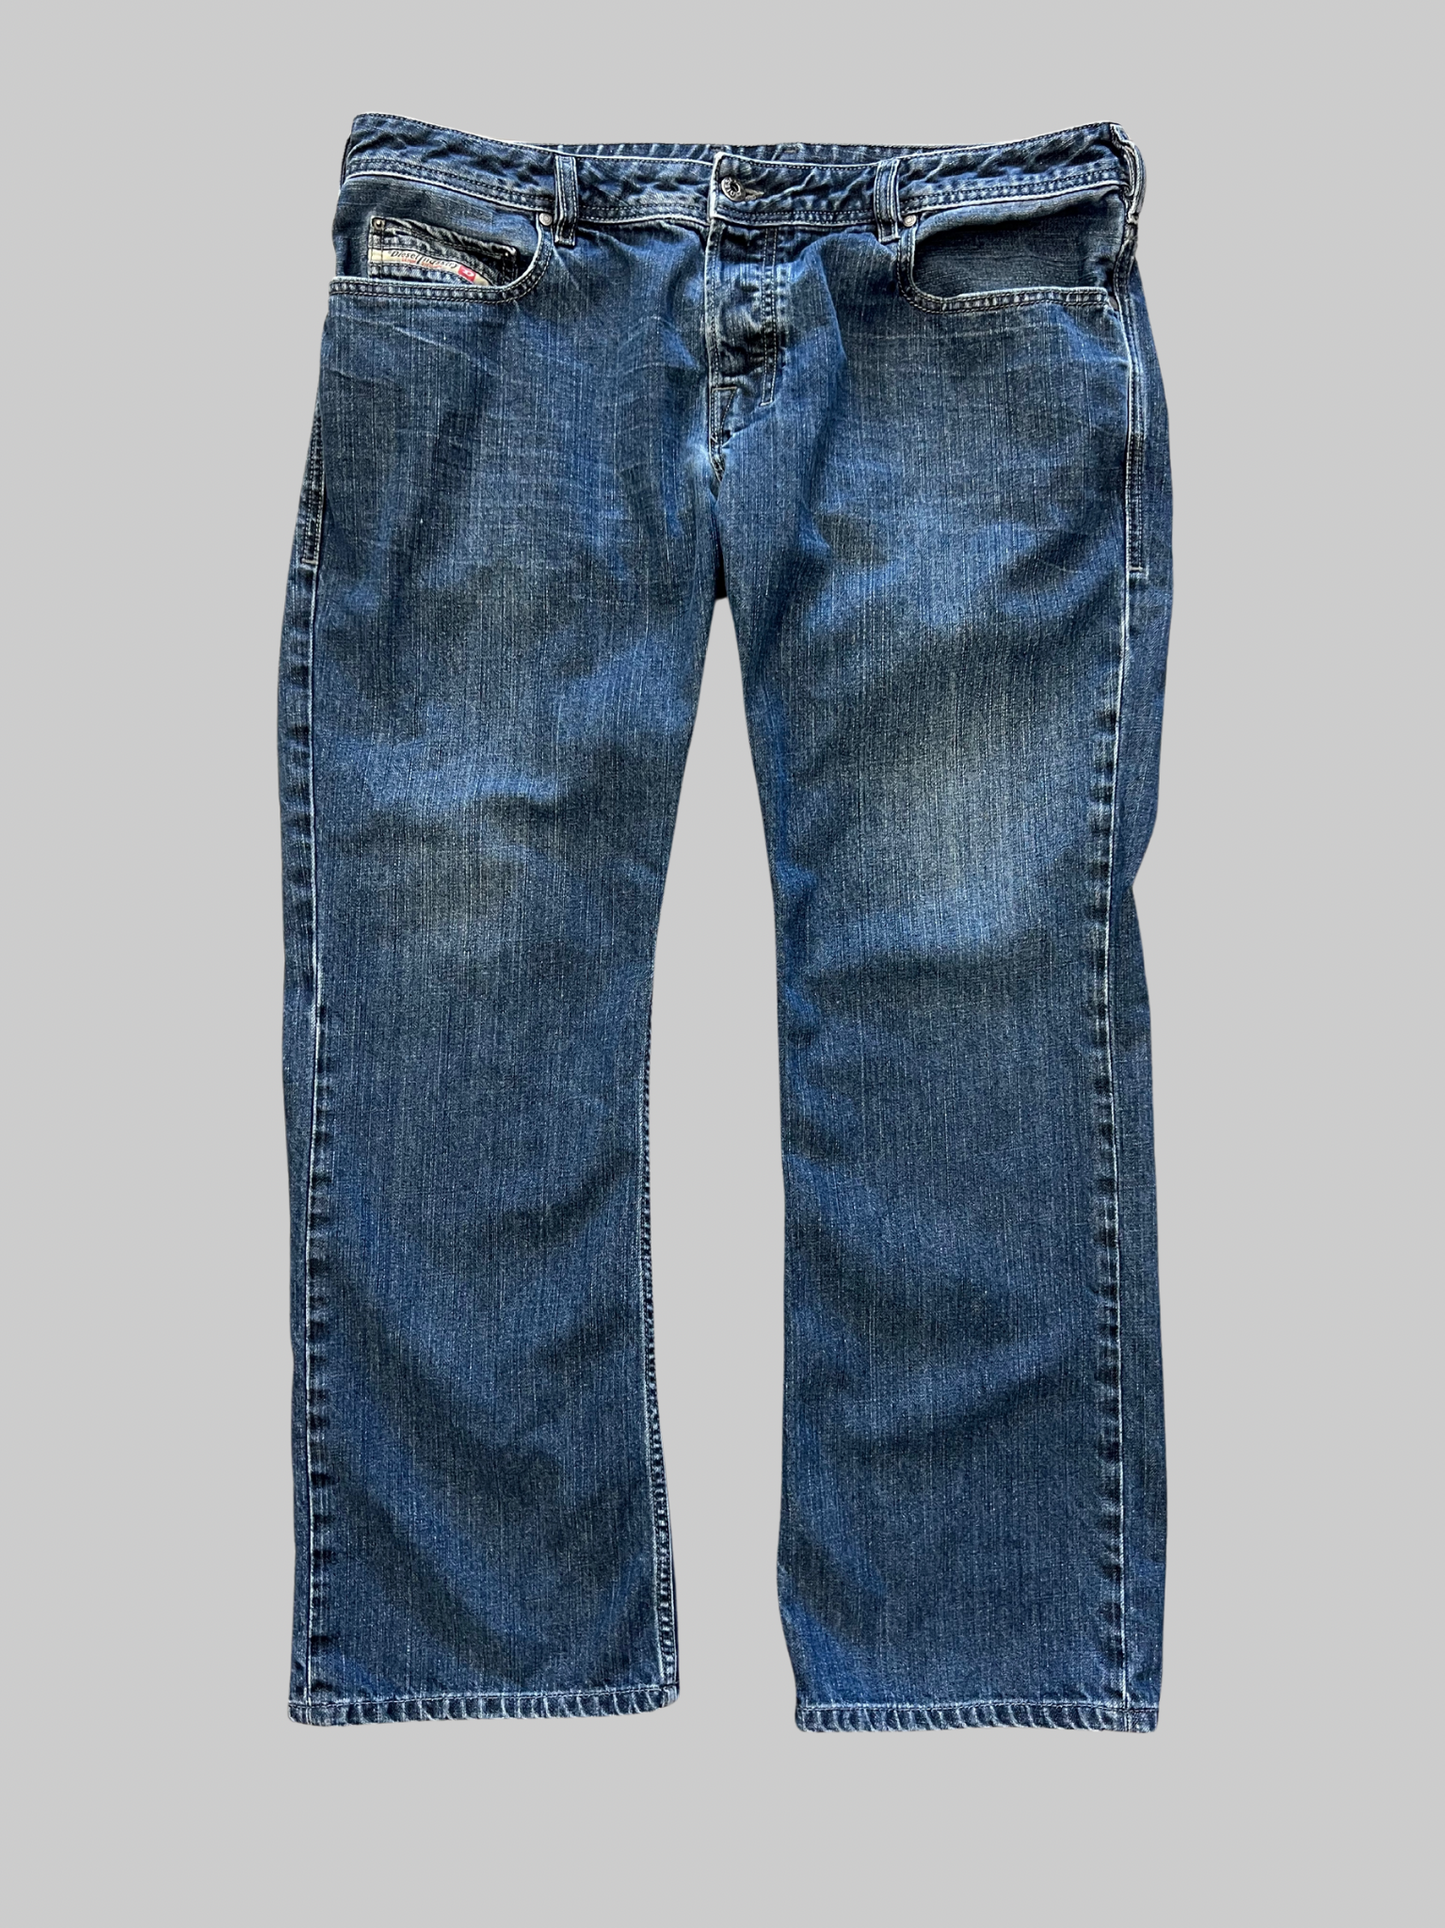 Blue Y2K Diesel Denim Pants (38x30)